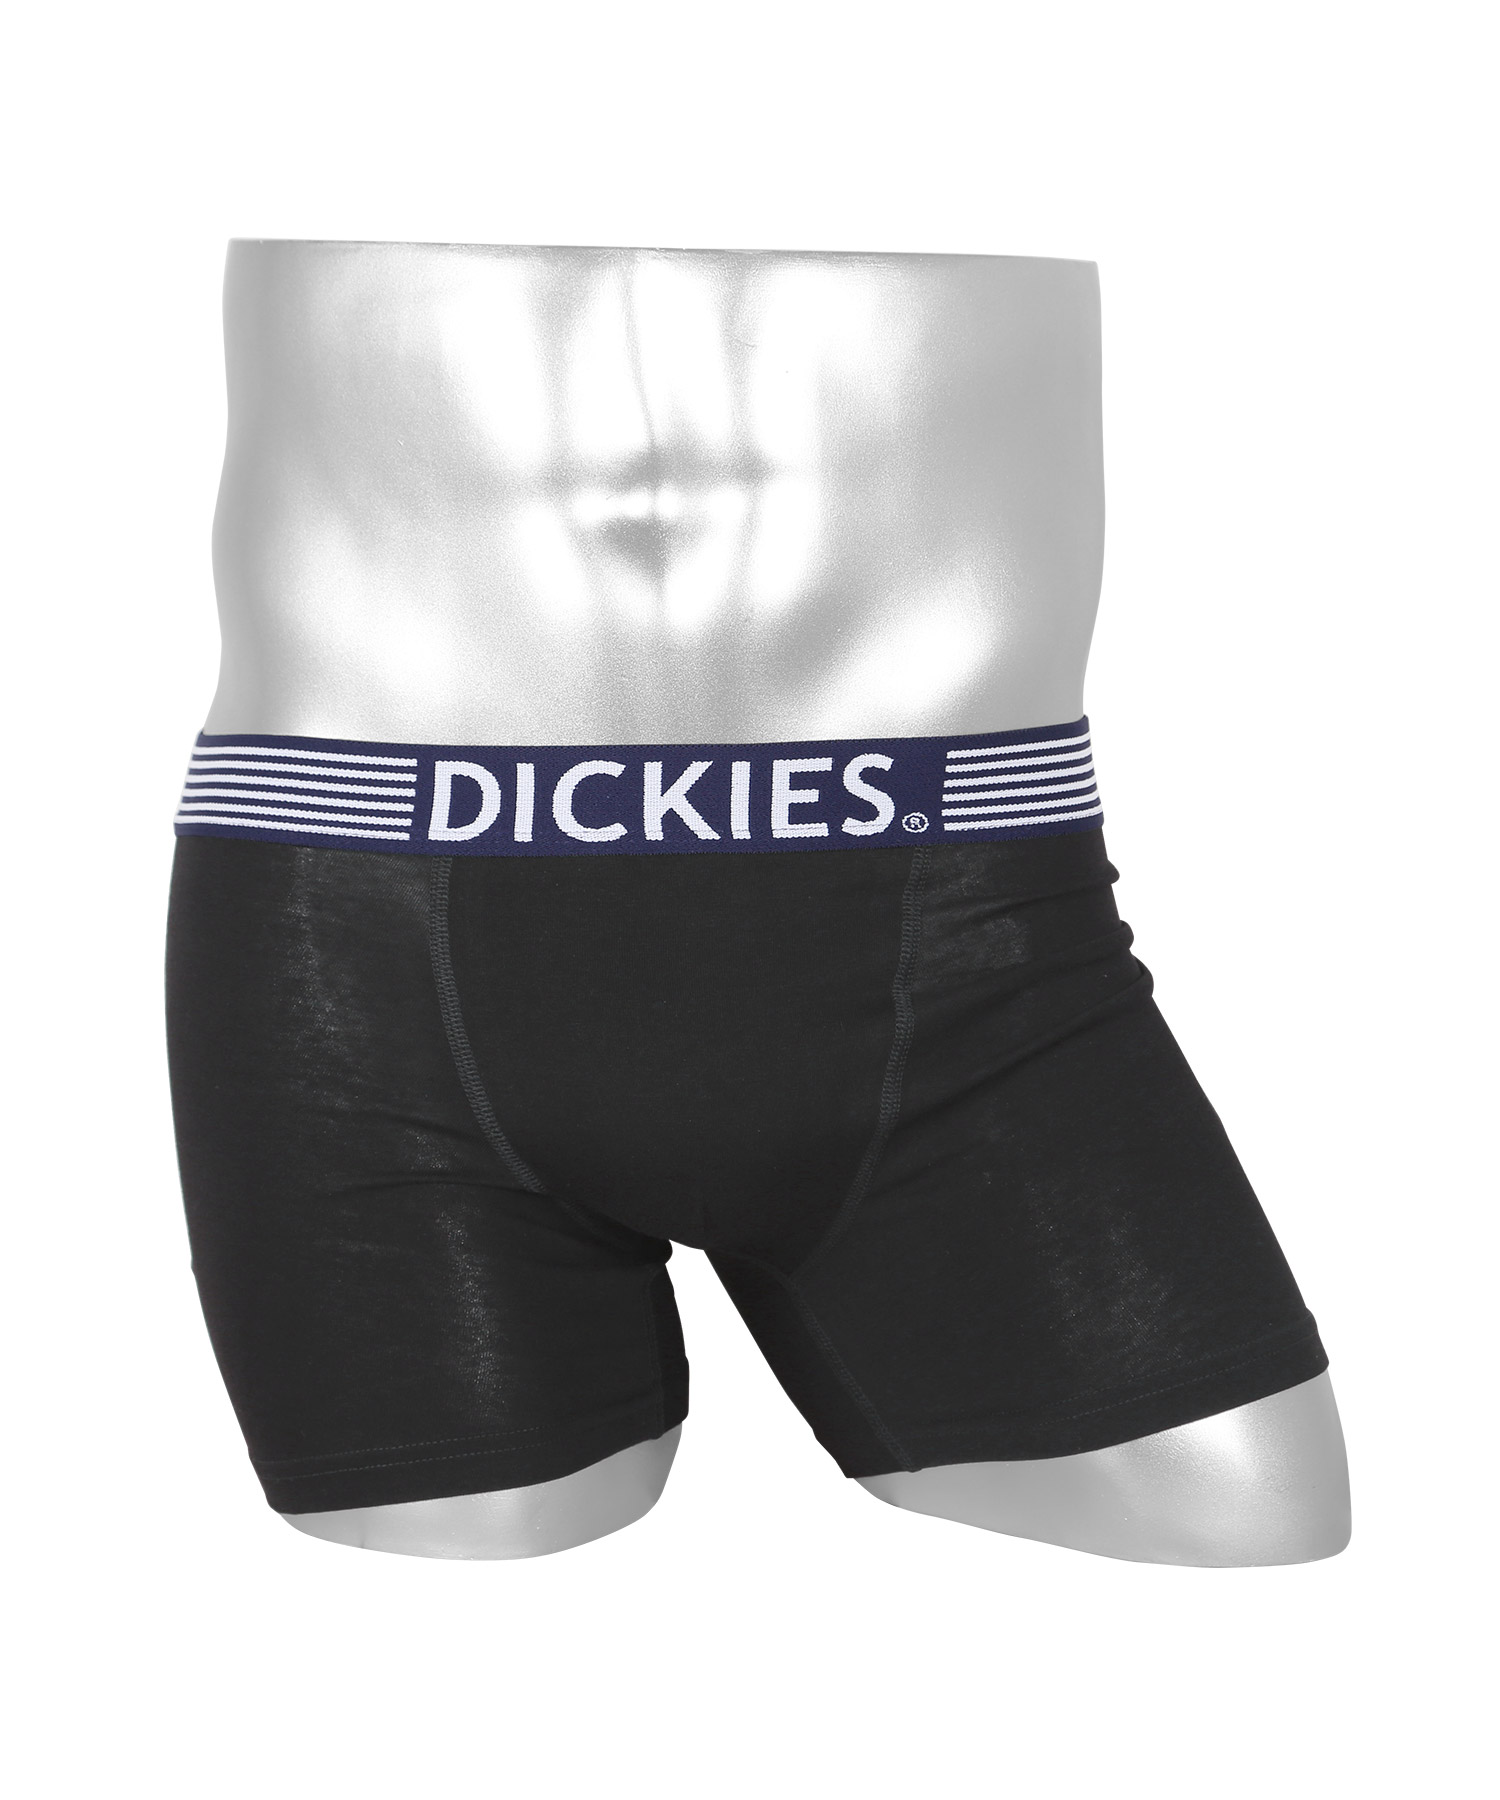 ディッキーズ Dickies ボクサーパンツ メンズ アンダーウェア 男性 下着 コットン ブランド...